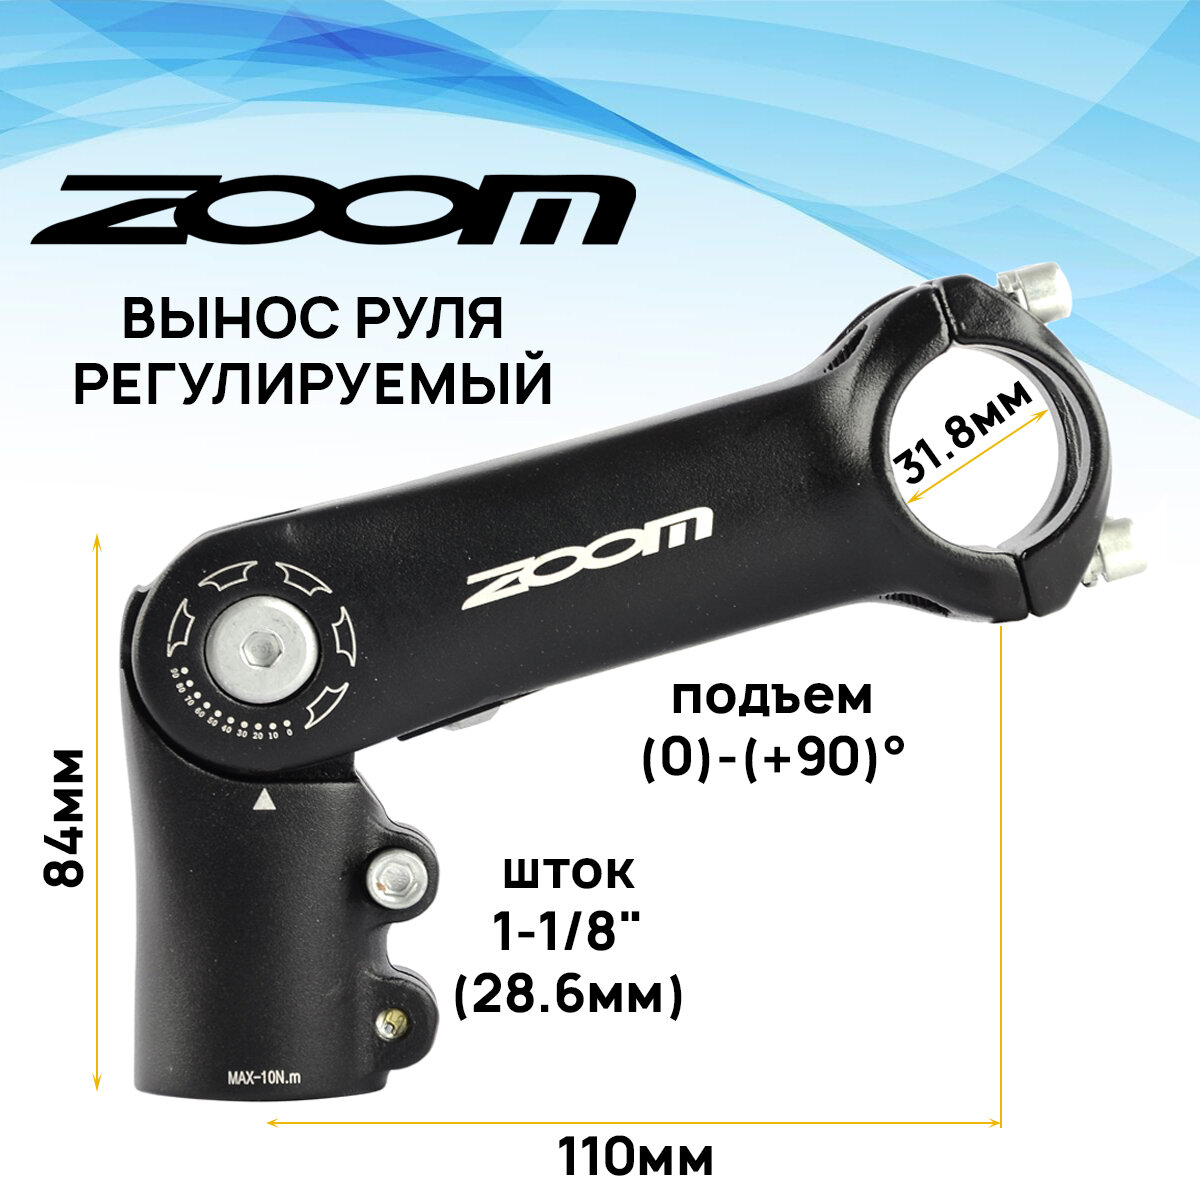 Вынос руля внешний ZOOM TDS-C279-8FOV, регулируемый, 1-1/8" под руль 31,8мм, угол 0/+90 градусов, длина E-110мм, 4 болта, черный